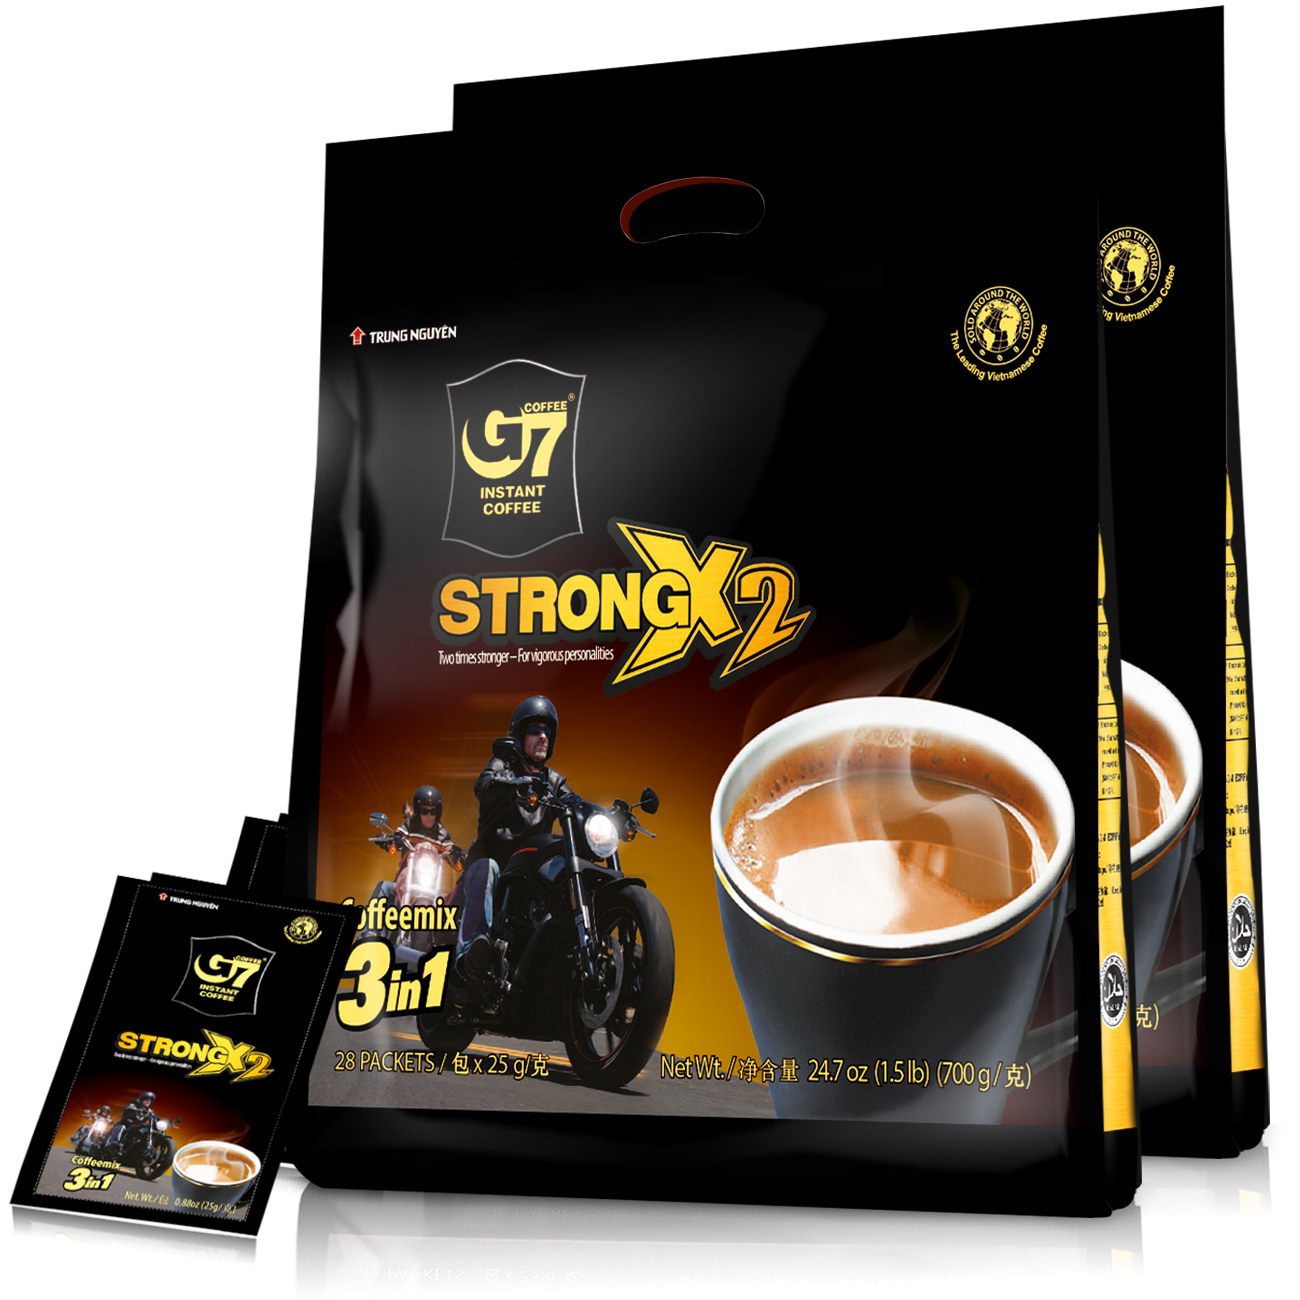 越南原装进口 中原G7 三合一咖啡浓醇700g*2袋(25g*56包) 速溶咖啡粉袋装提神冲饮饮品